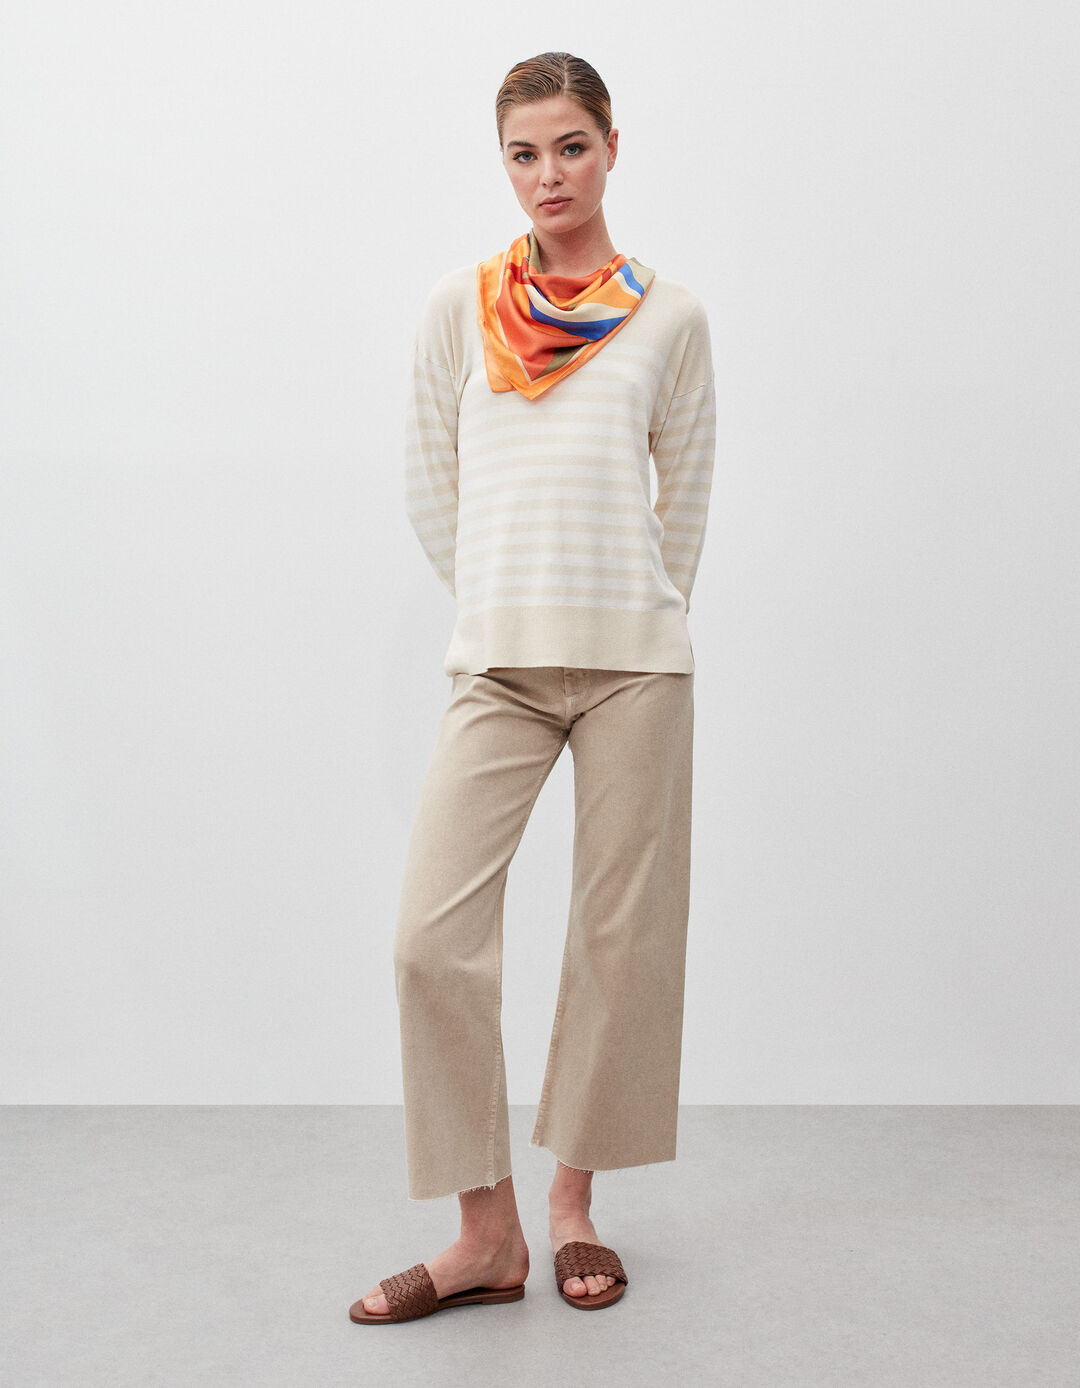 Striped Knit Sweater, Women, Light Beige